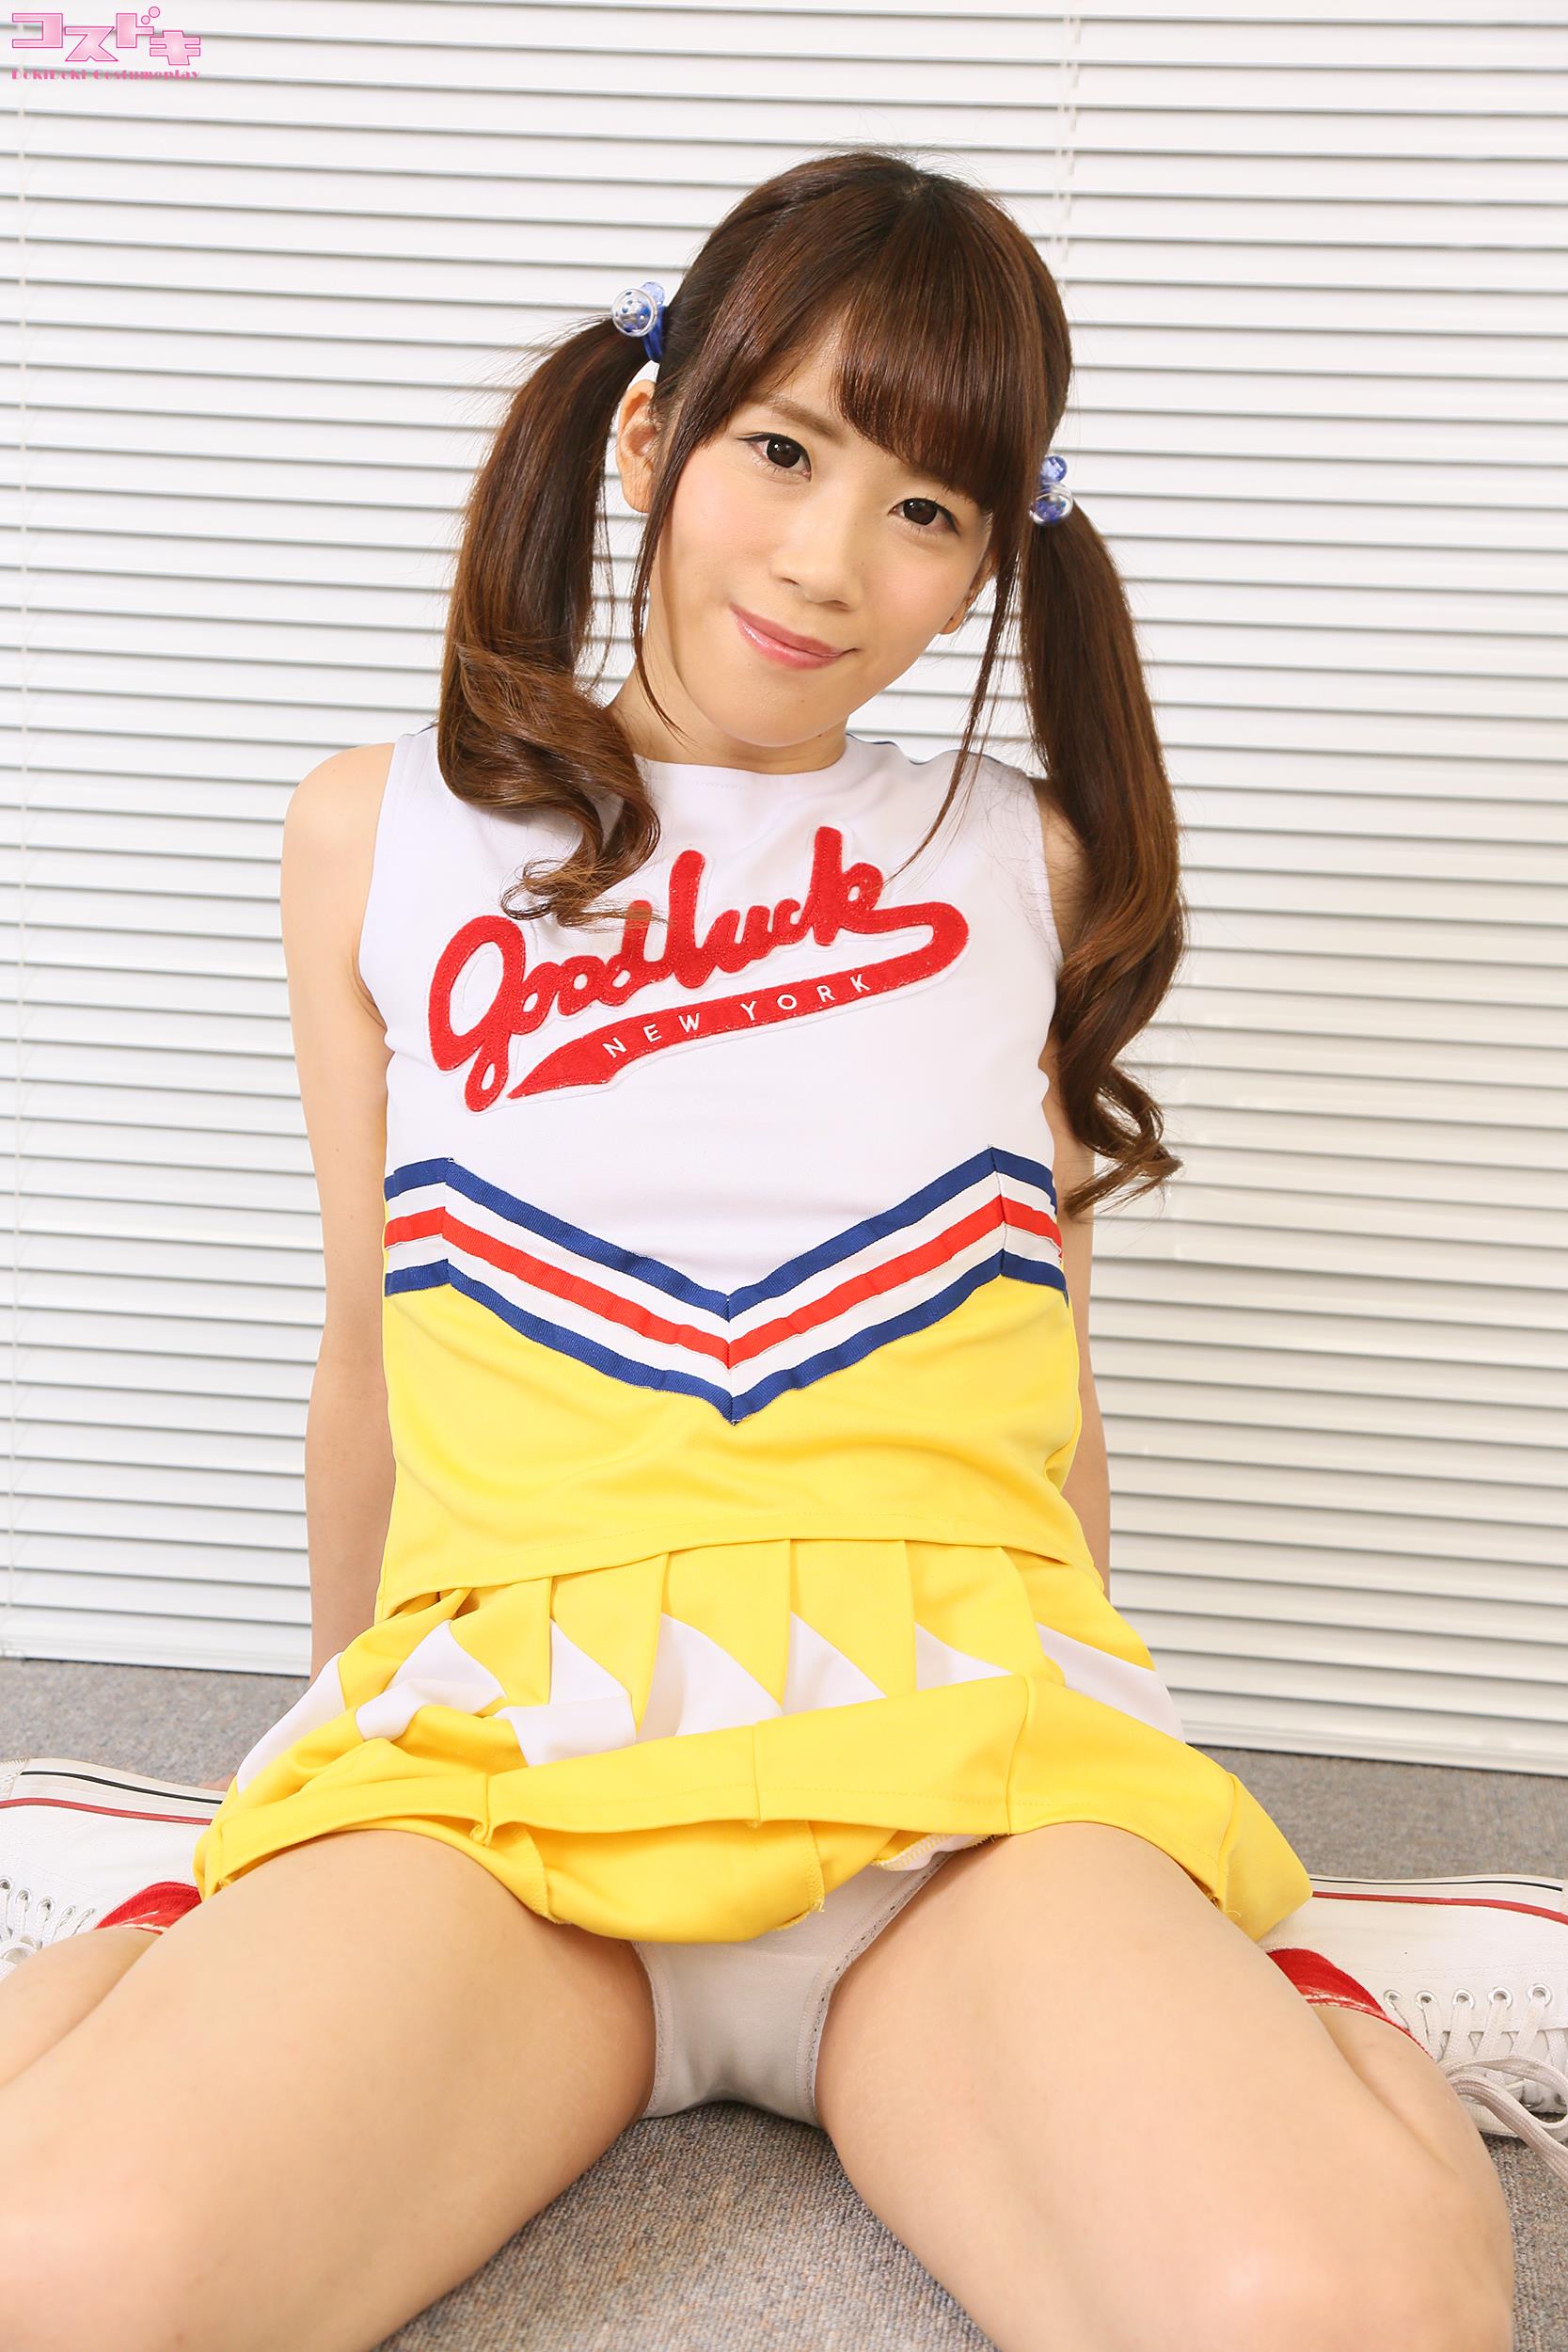 Cosdoki Yuuna Kubo 久保 kuboyuuna pic cheerleader1 - 34.jpg